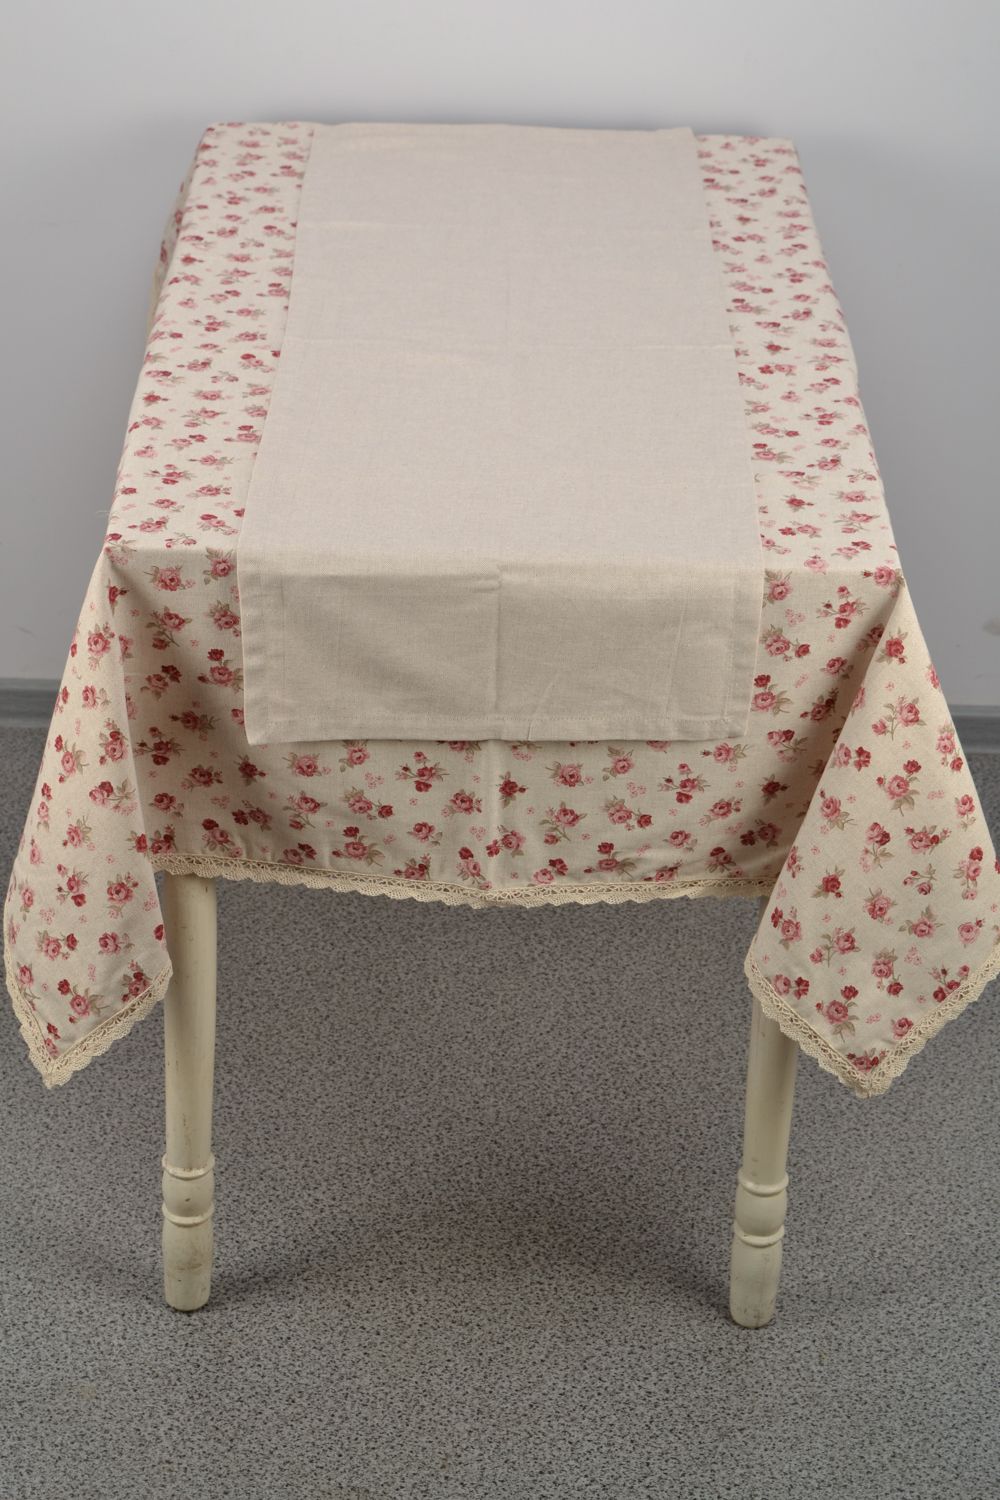 Скатерть на прямоугольный стол из хлопка и полиамида с принтом в розы фото 4